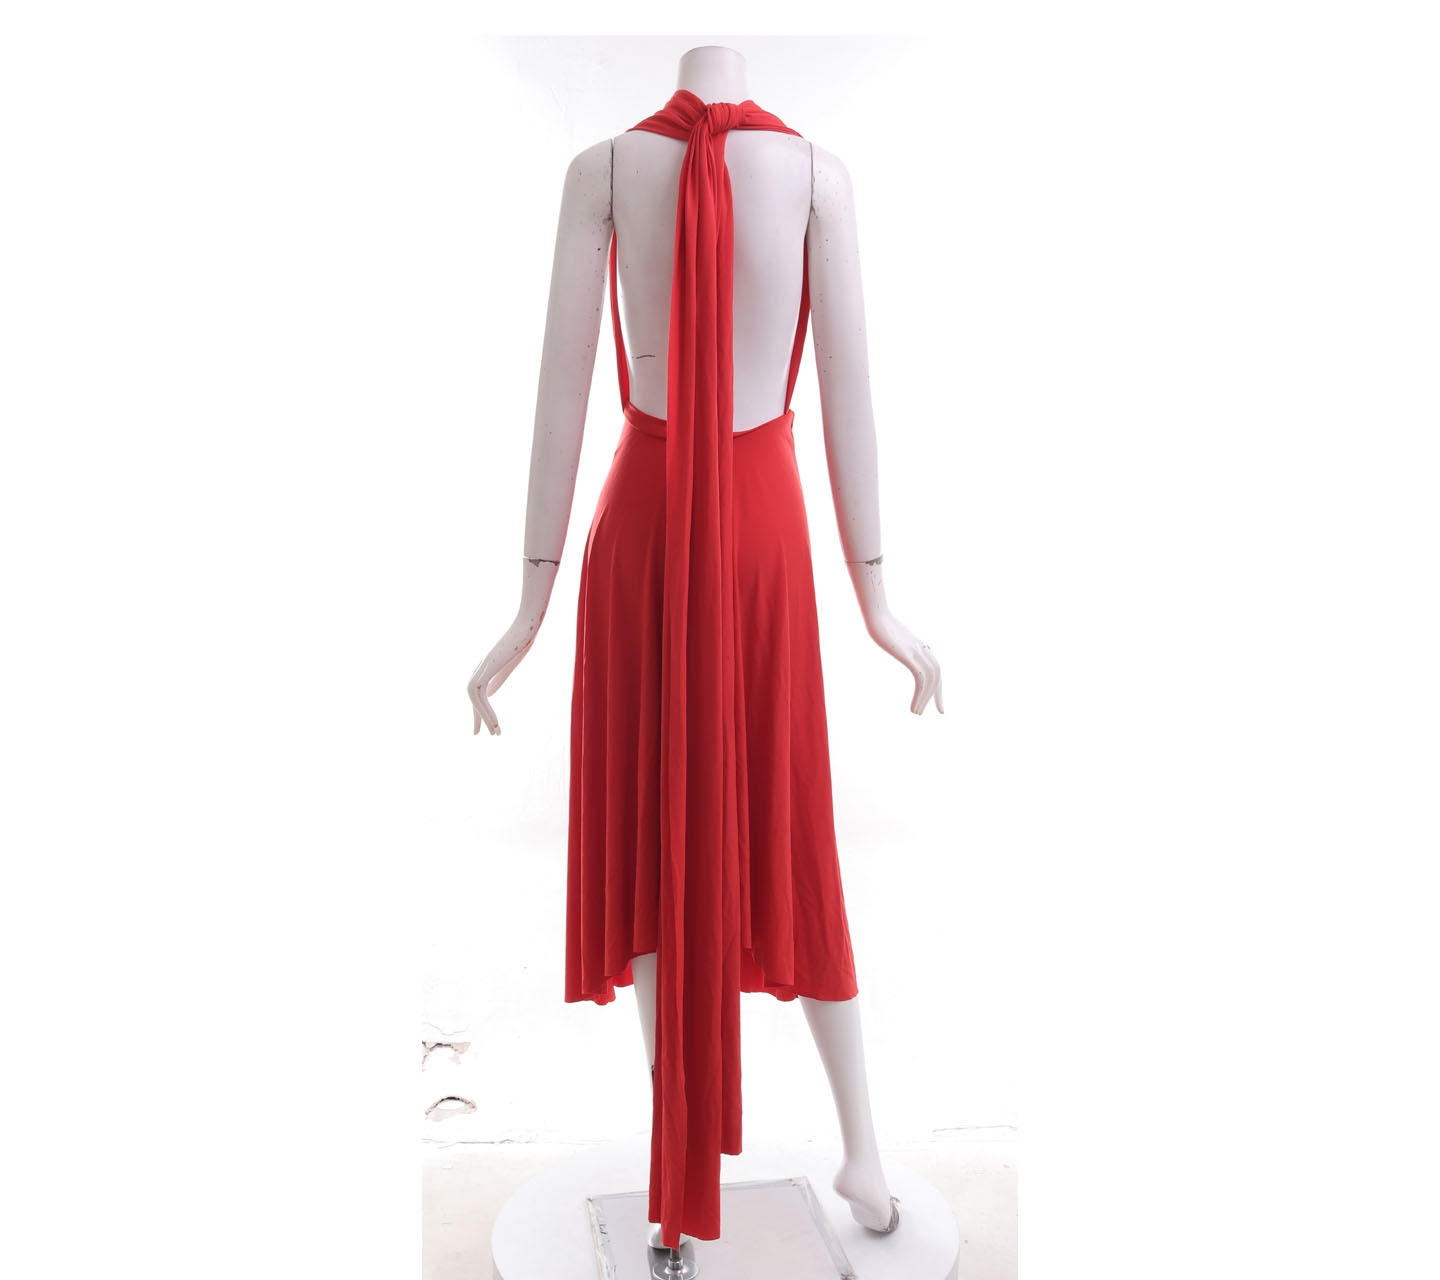 Moda International Red Halter NeckLong Dress